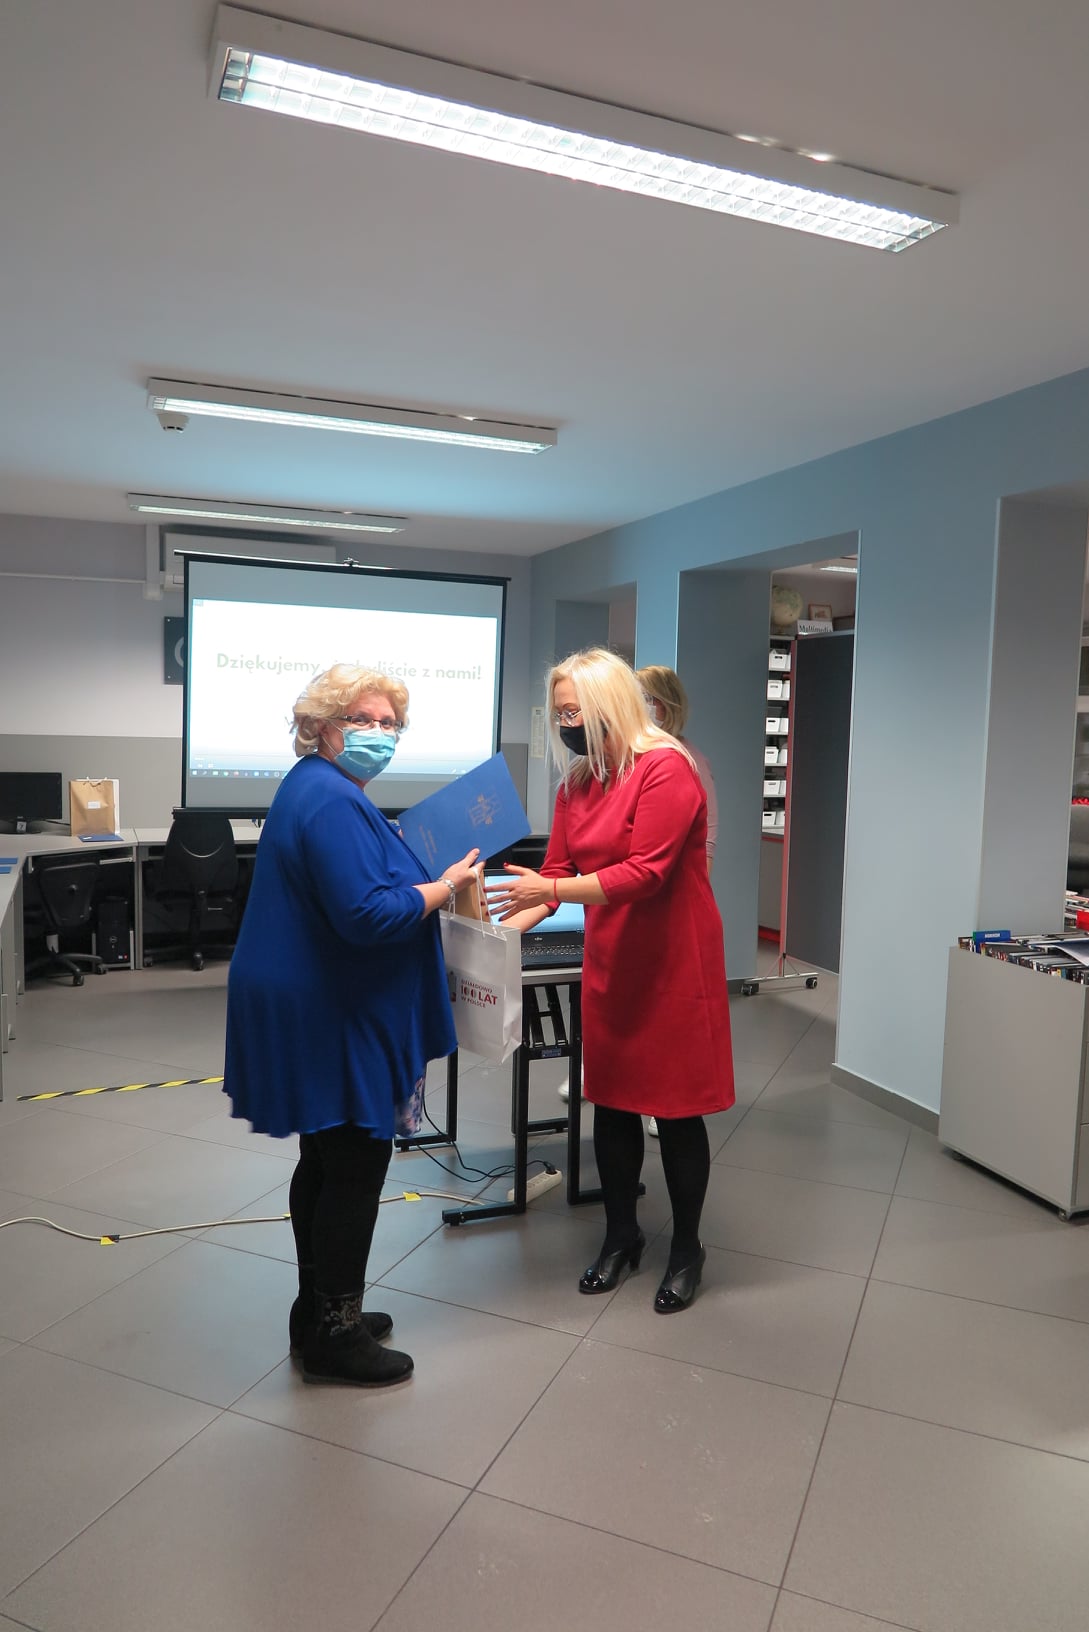 Dyrektor biblioteki Justyna Lytvyn wręcza dyplom oraz nagrodę laureatce, która wysłuchała najwięcej audiobooków w roku 2020.